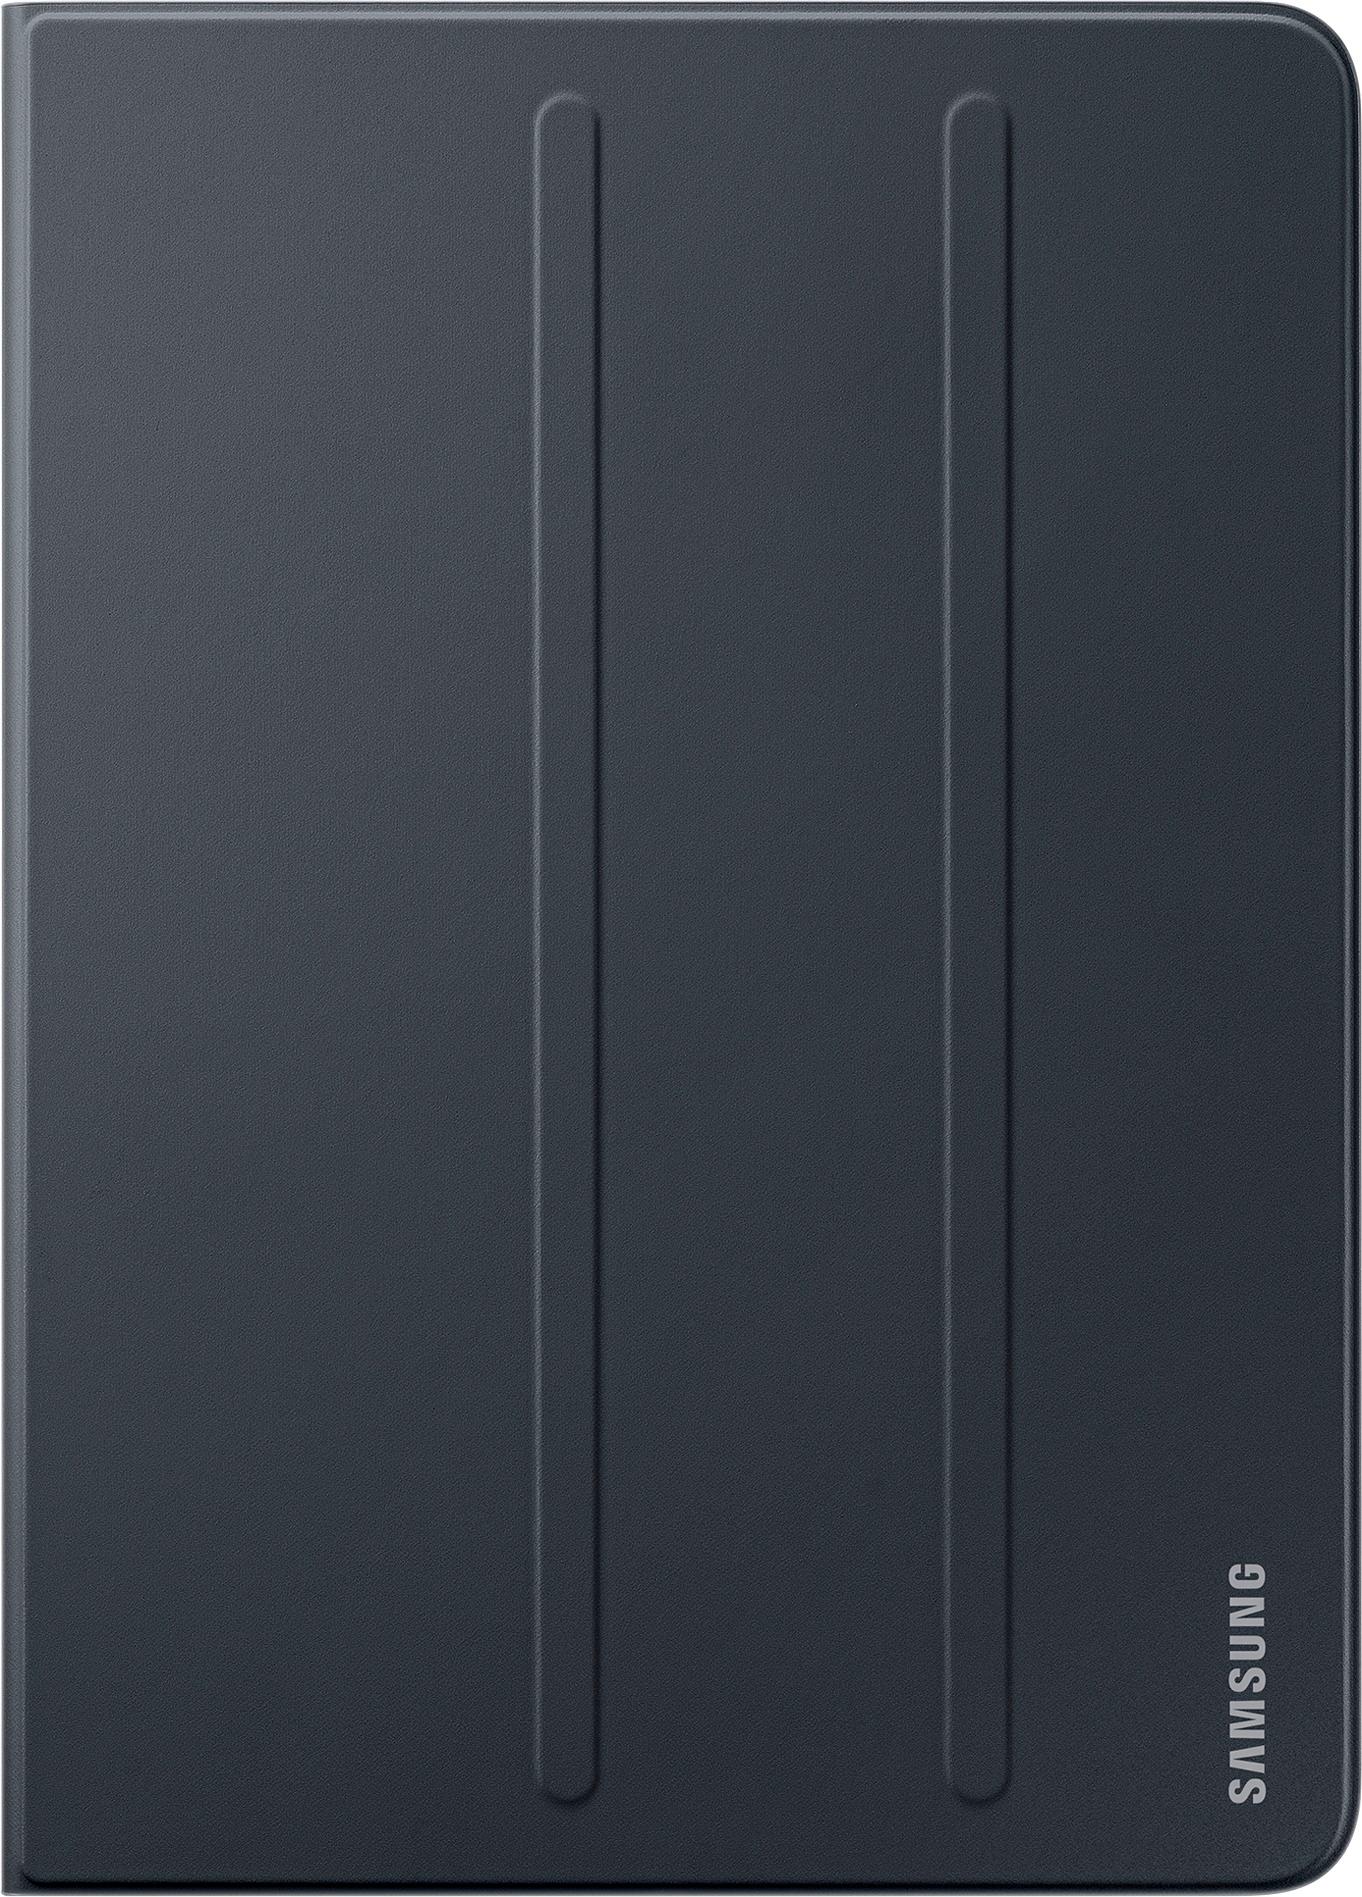 Samsung - Folio Case for Galaxy Tab S3 9.7" - Black